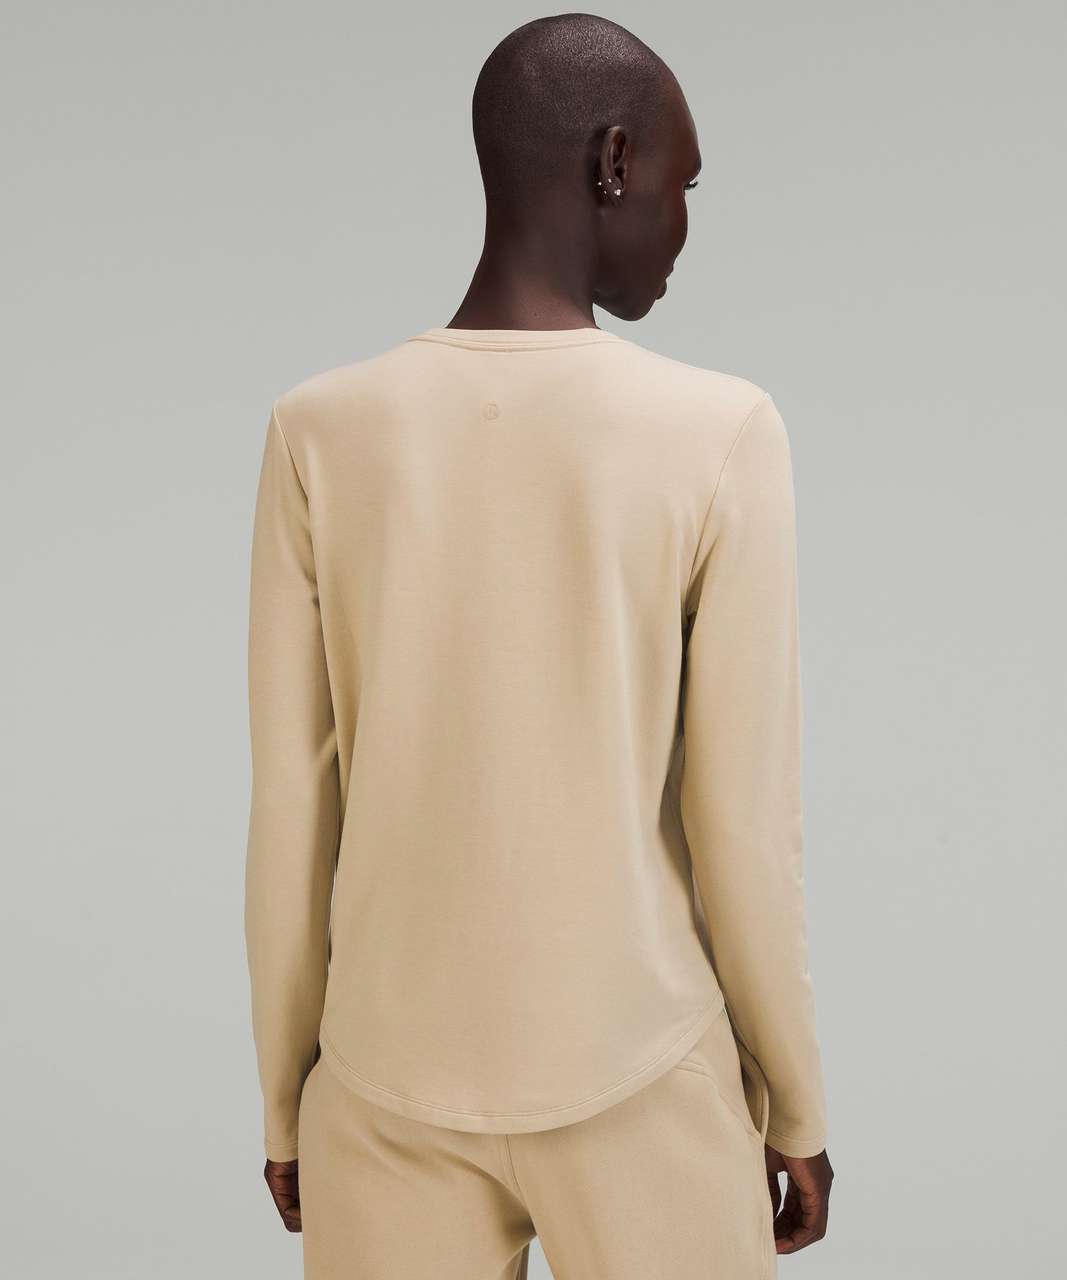 Lululemon Love Modal Fleece Long Sleeve Shirt - Trench